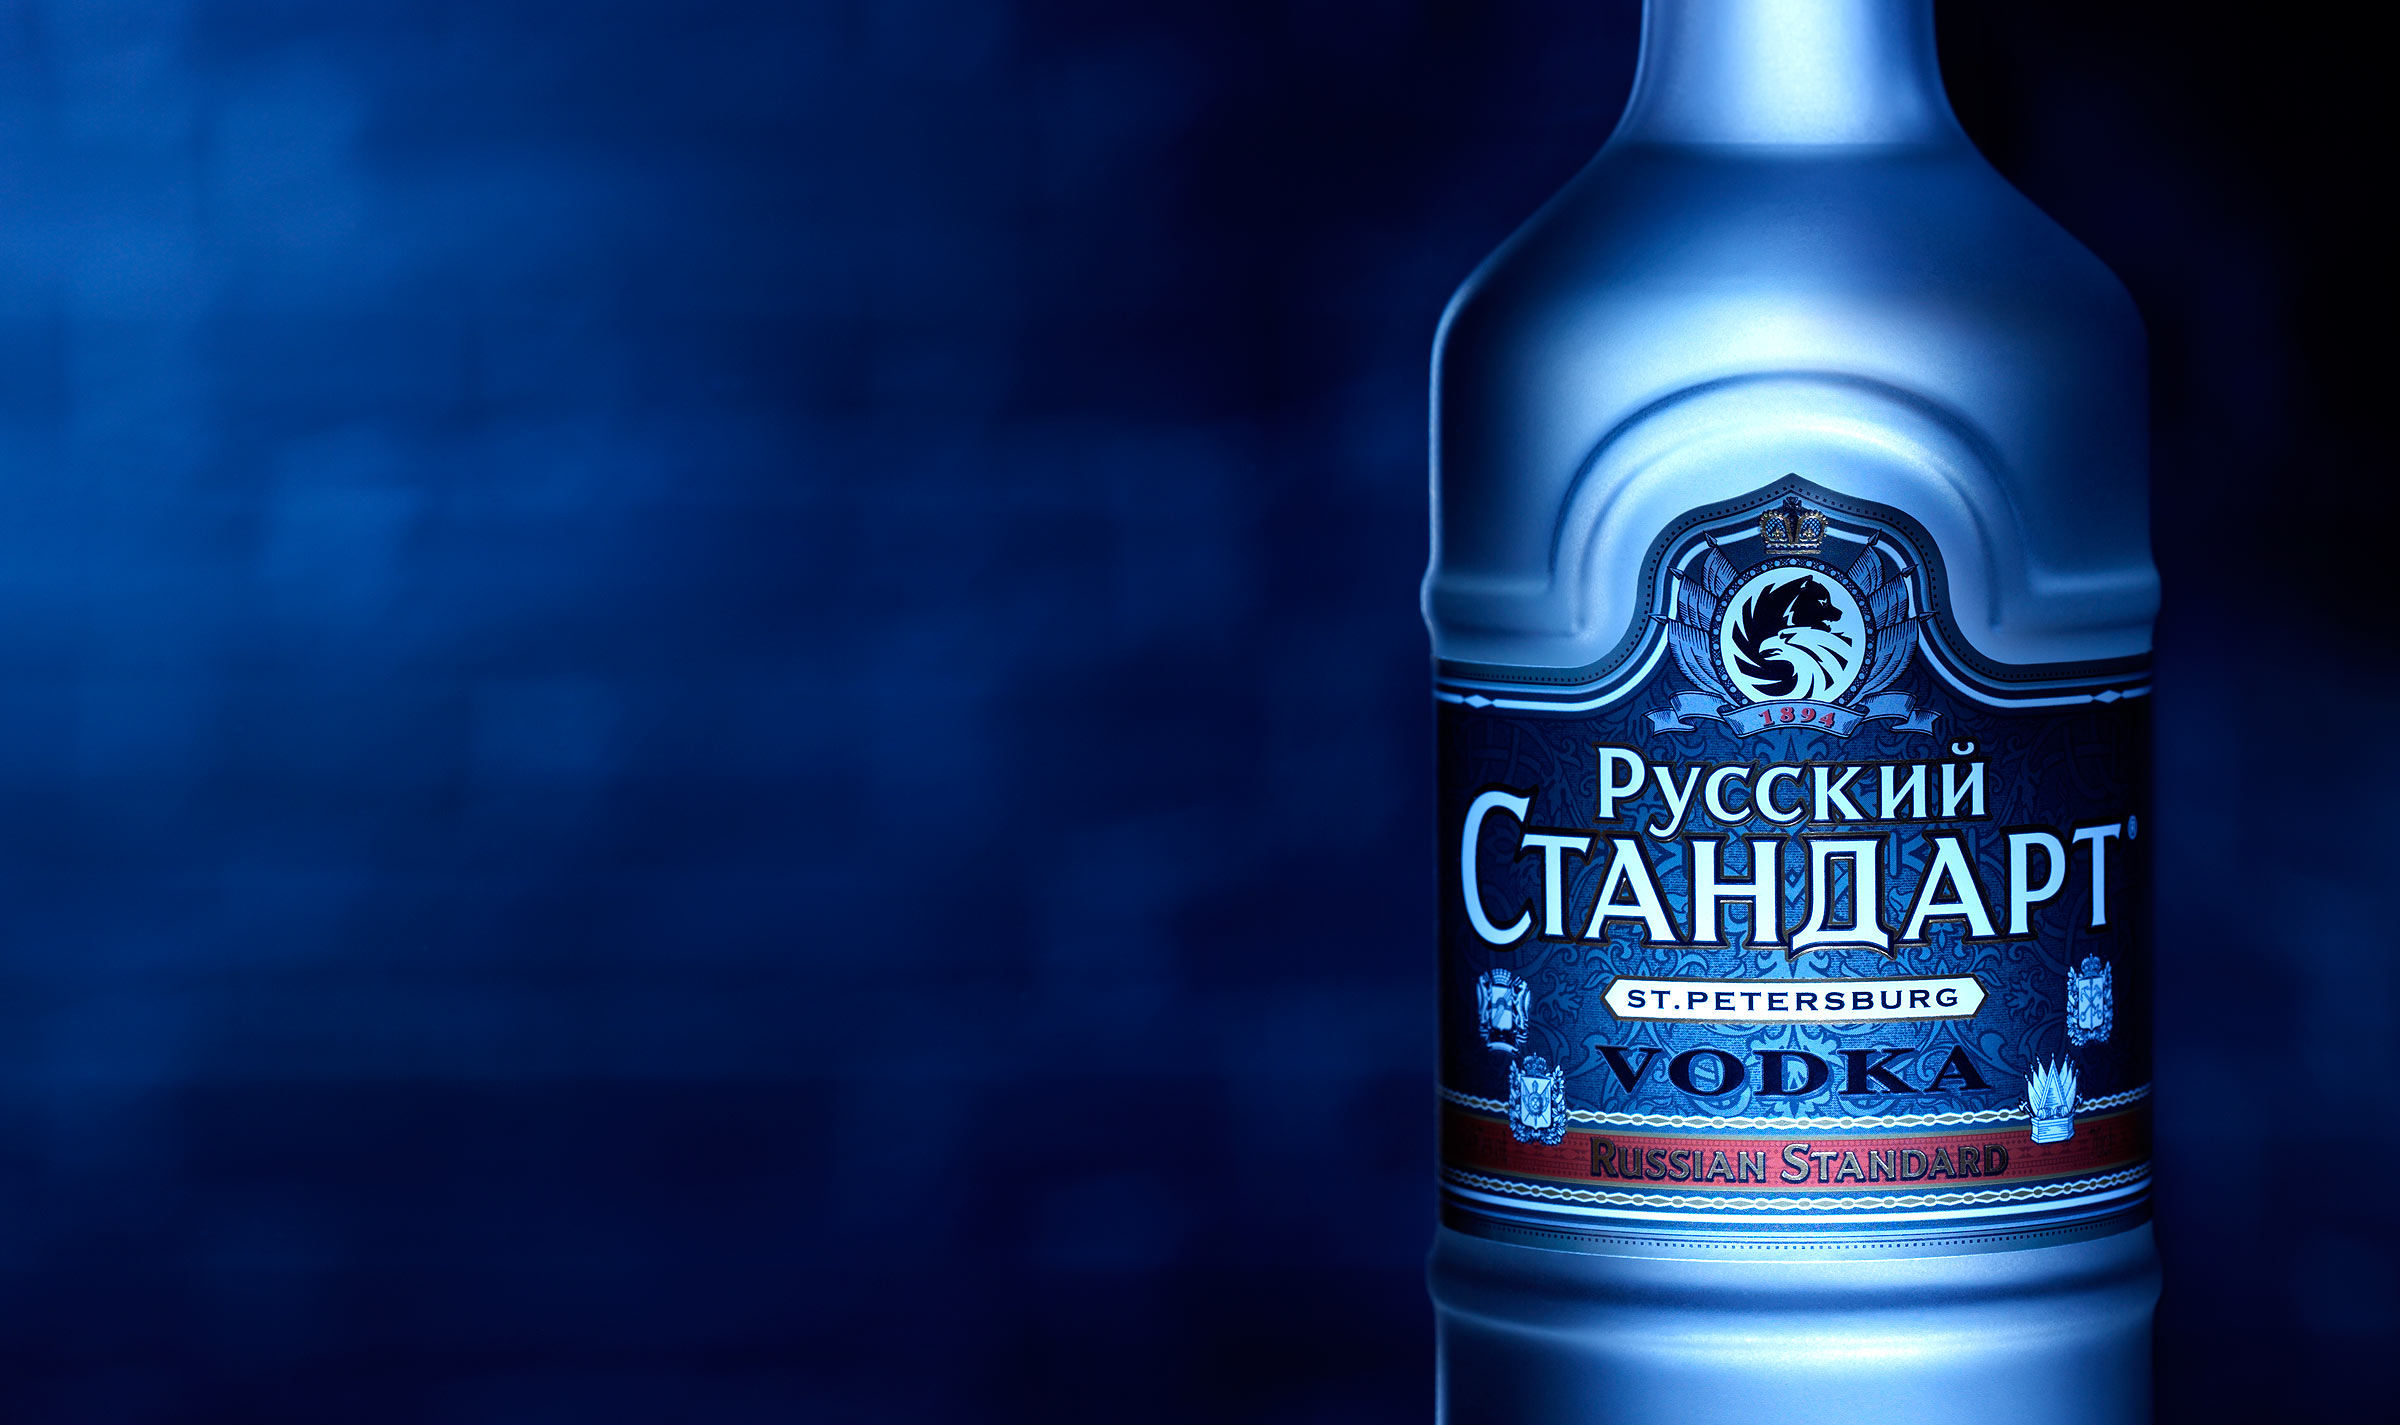 St. Petersburg Vodka | Warren Ryley Photography